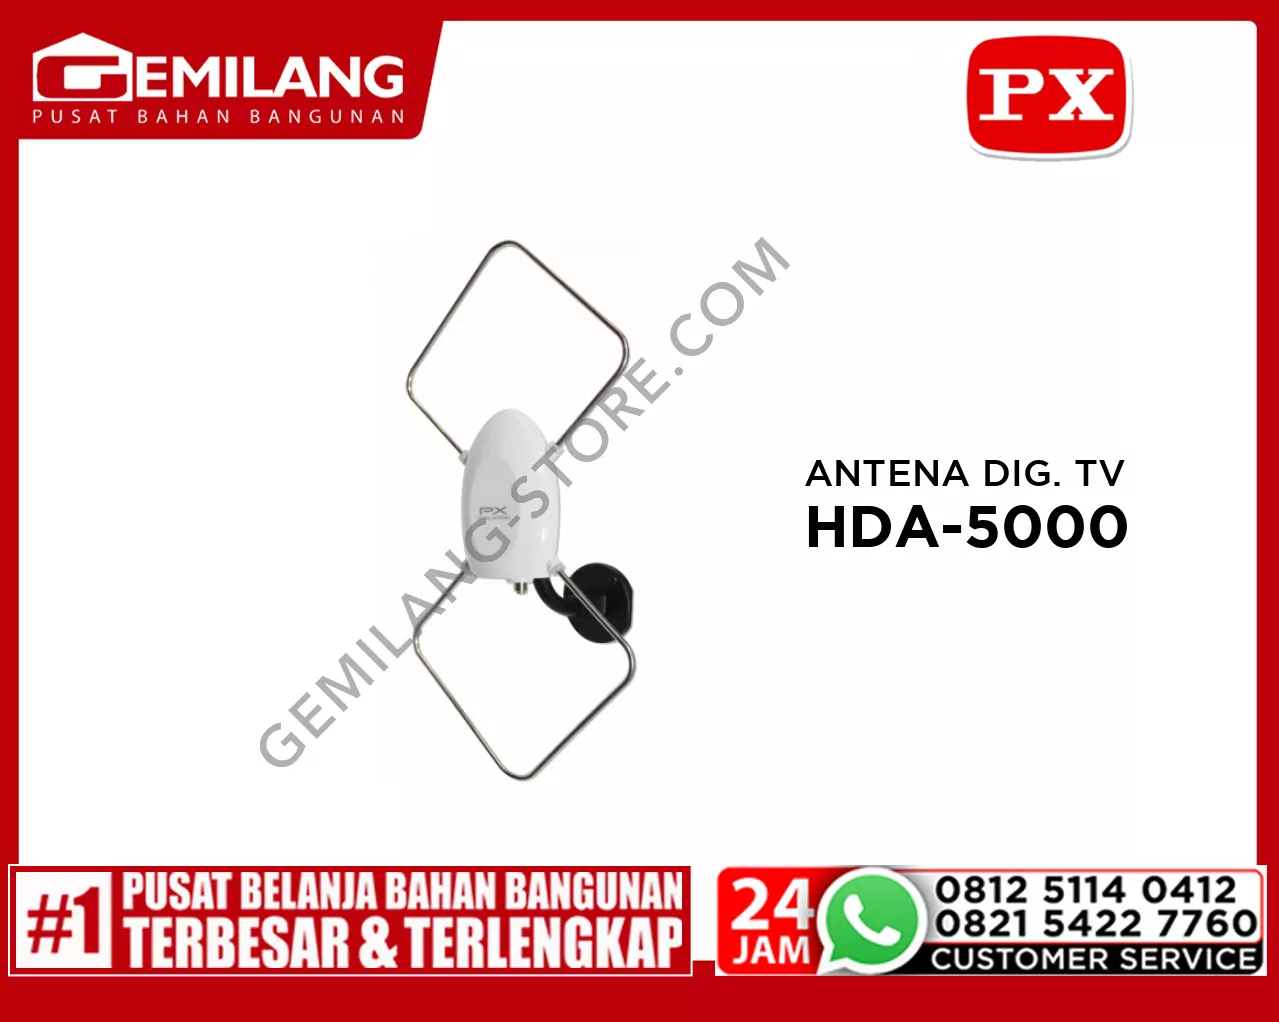 ANTENA DIGITAL TV INDOOR/OUTDOOR PX HDA-5000